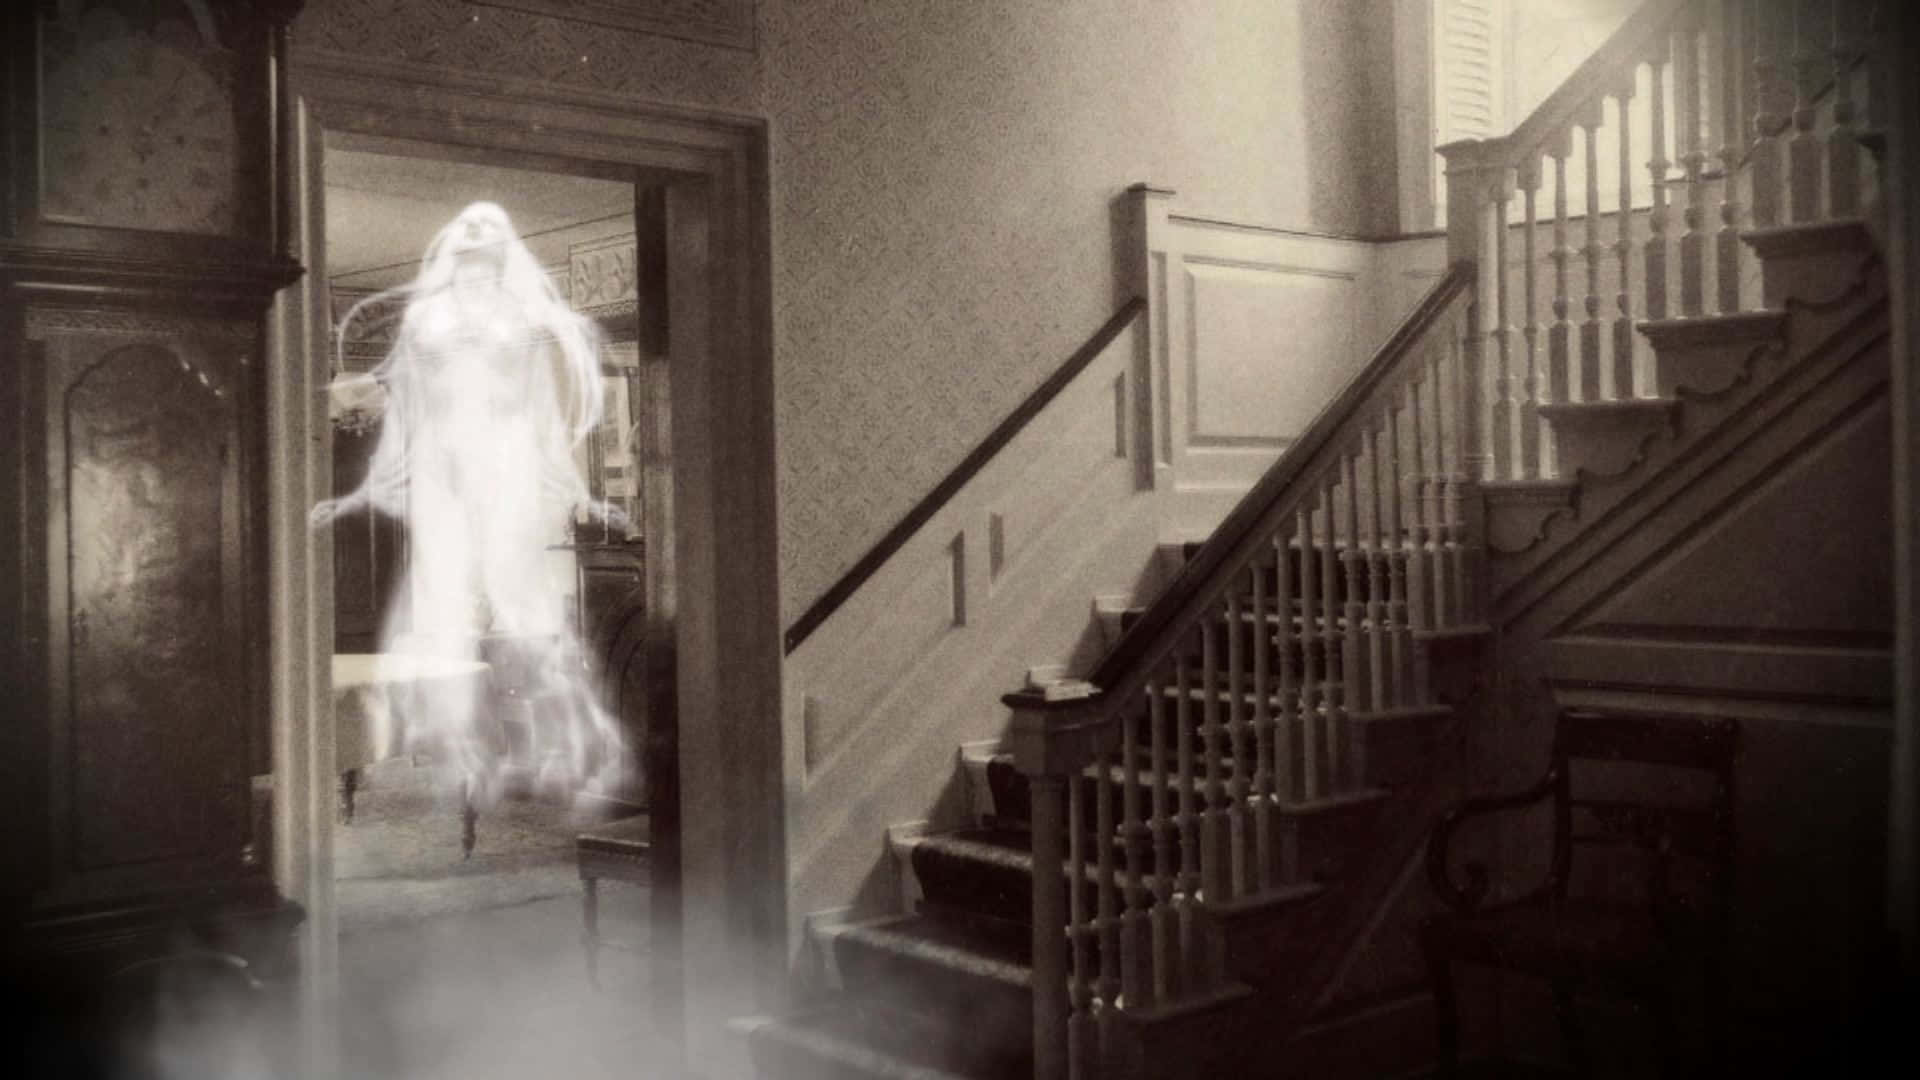 Imagende Una Casa Vieja Y Embrujada Con Un Fantasma Aterrador.